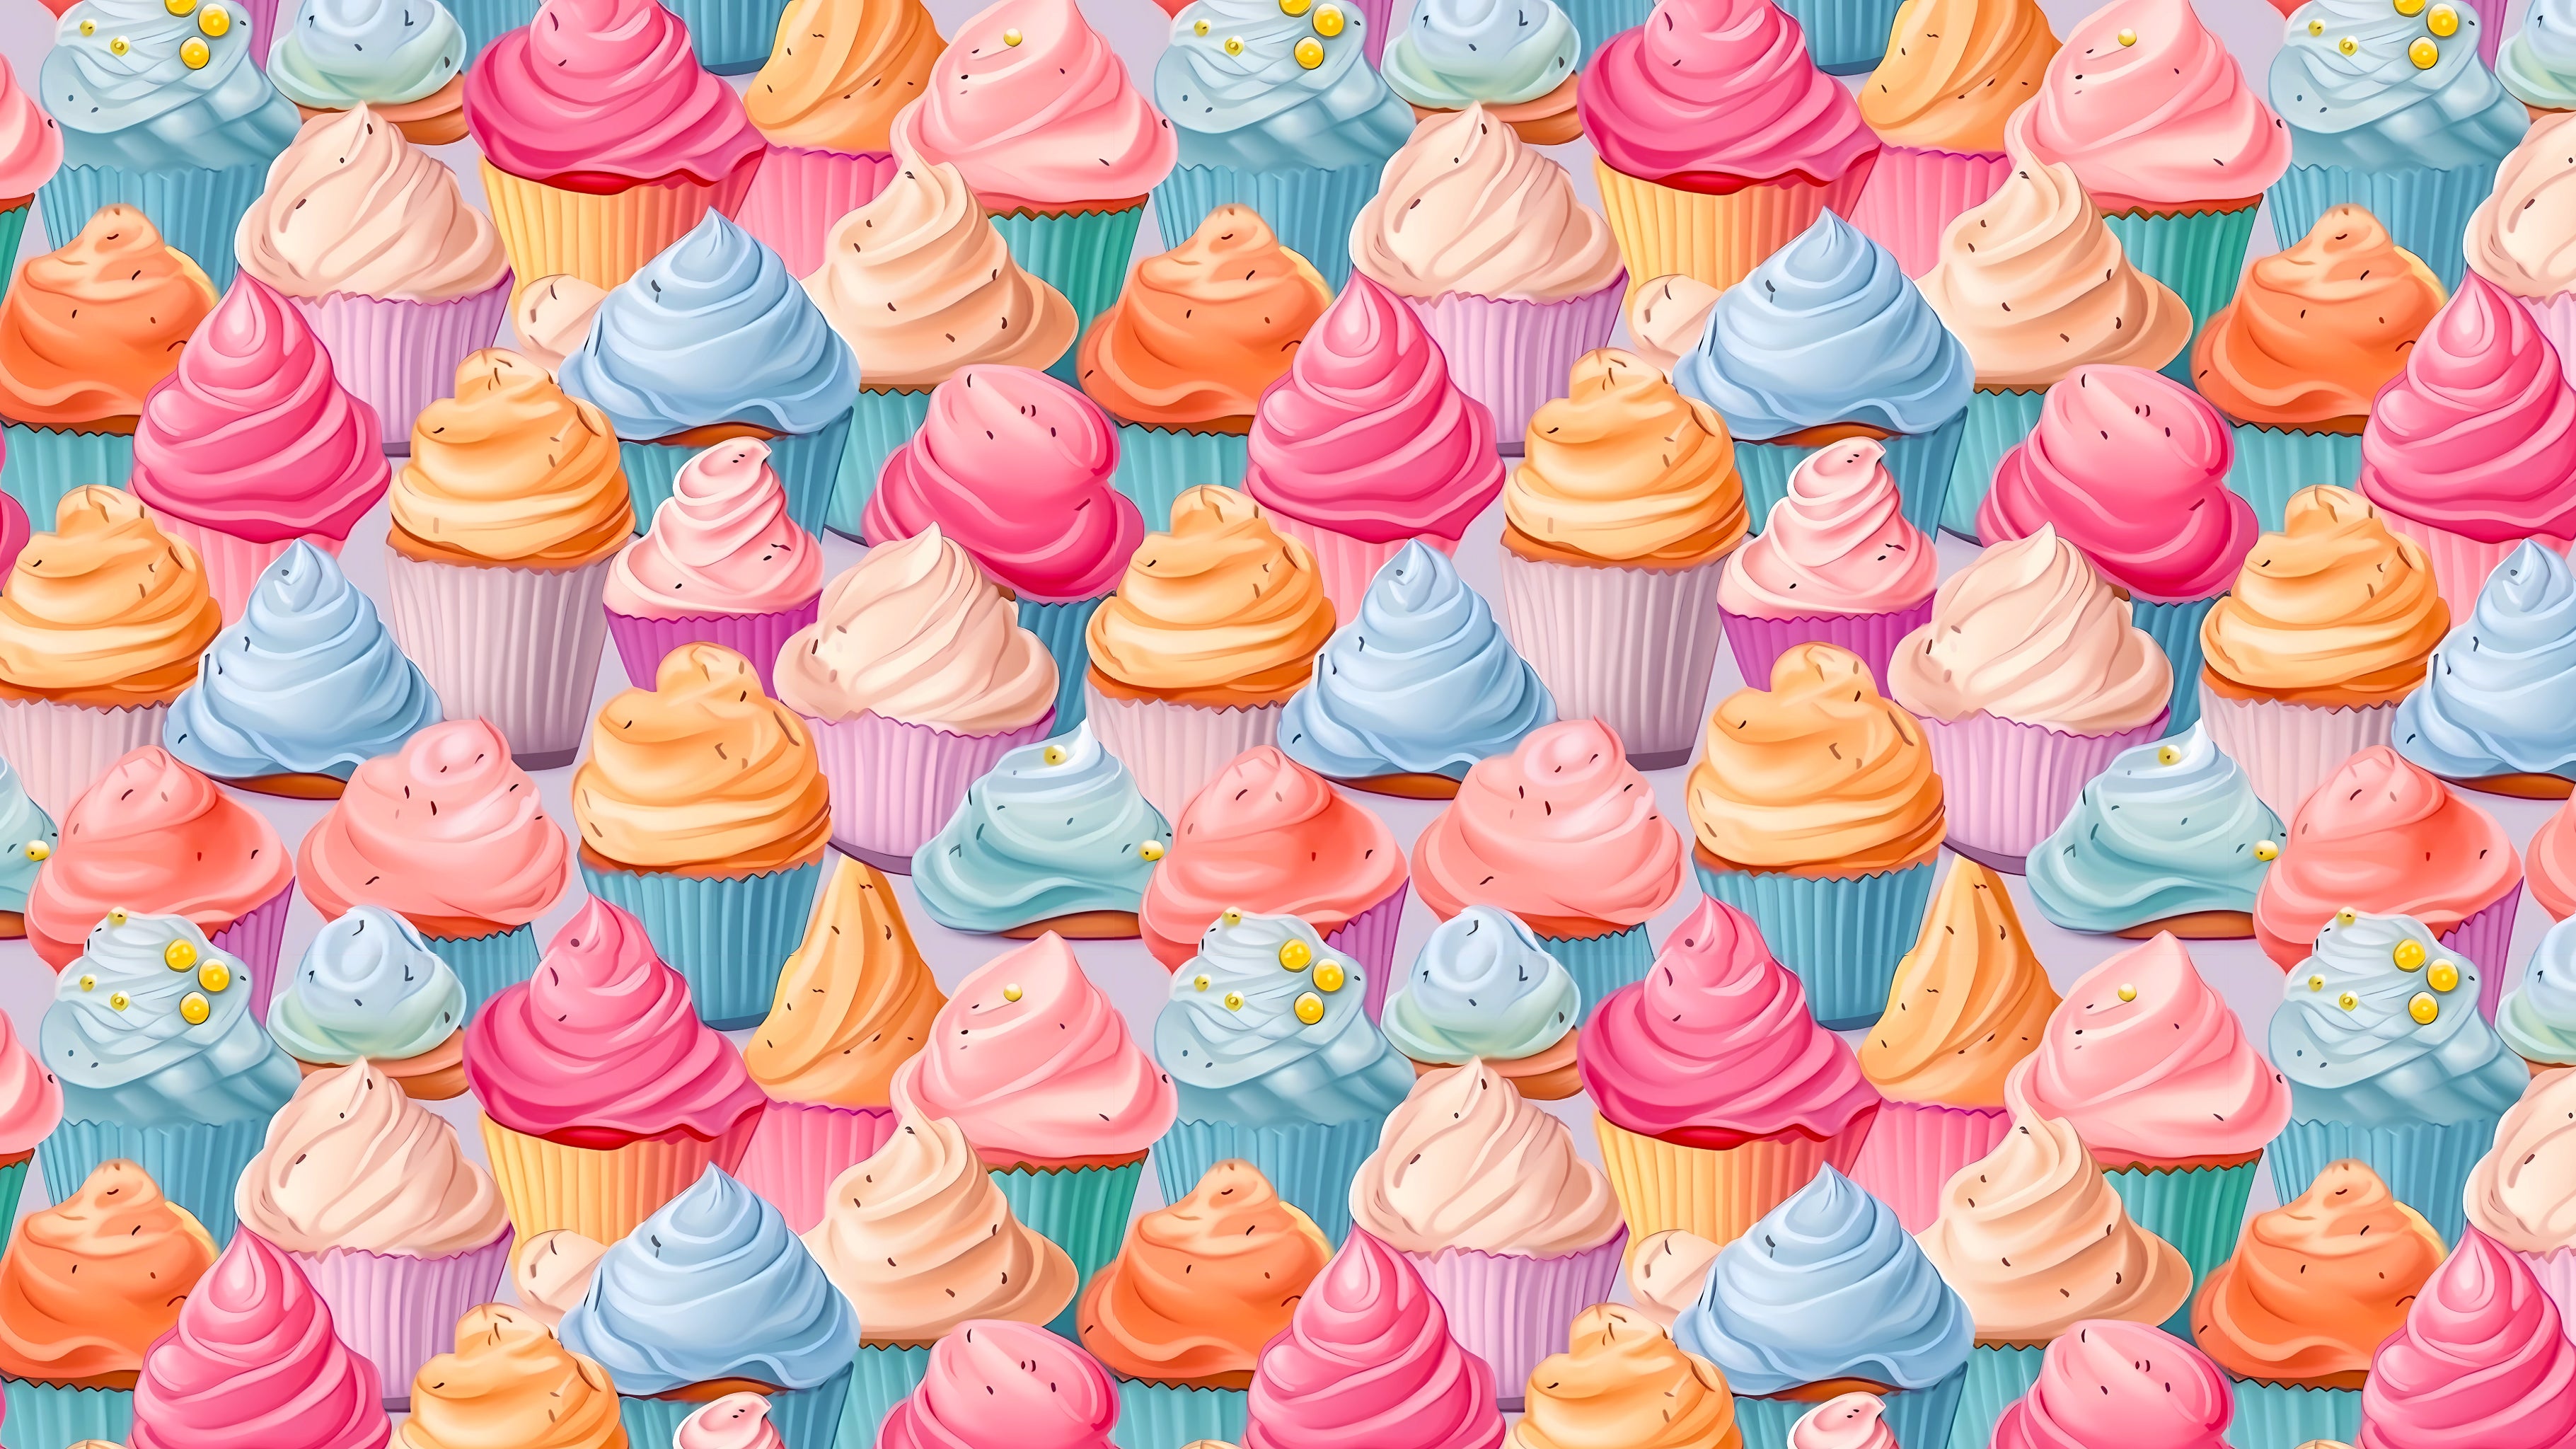 Cupcakes, by Studio Ten Design